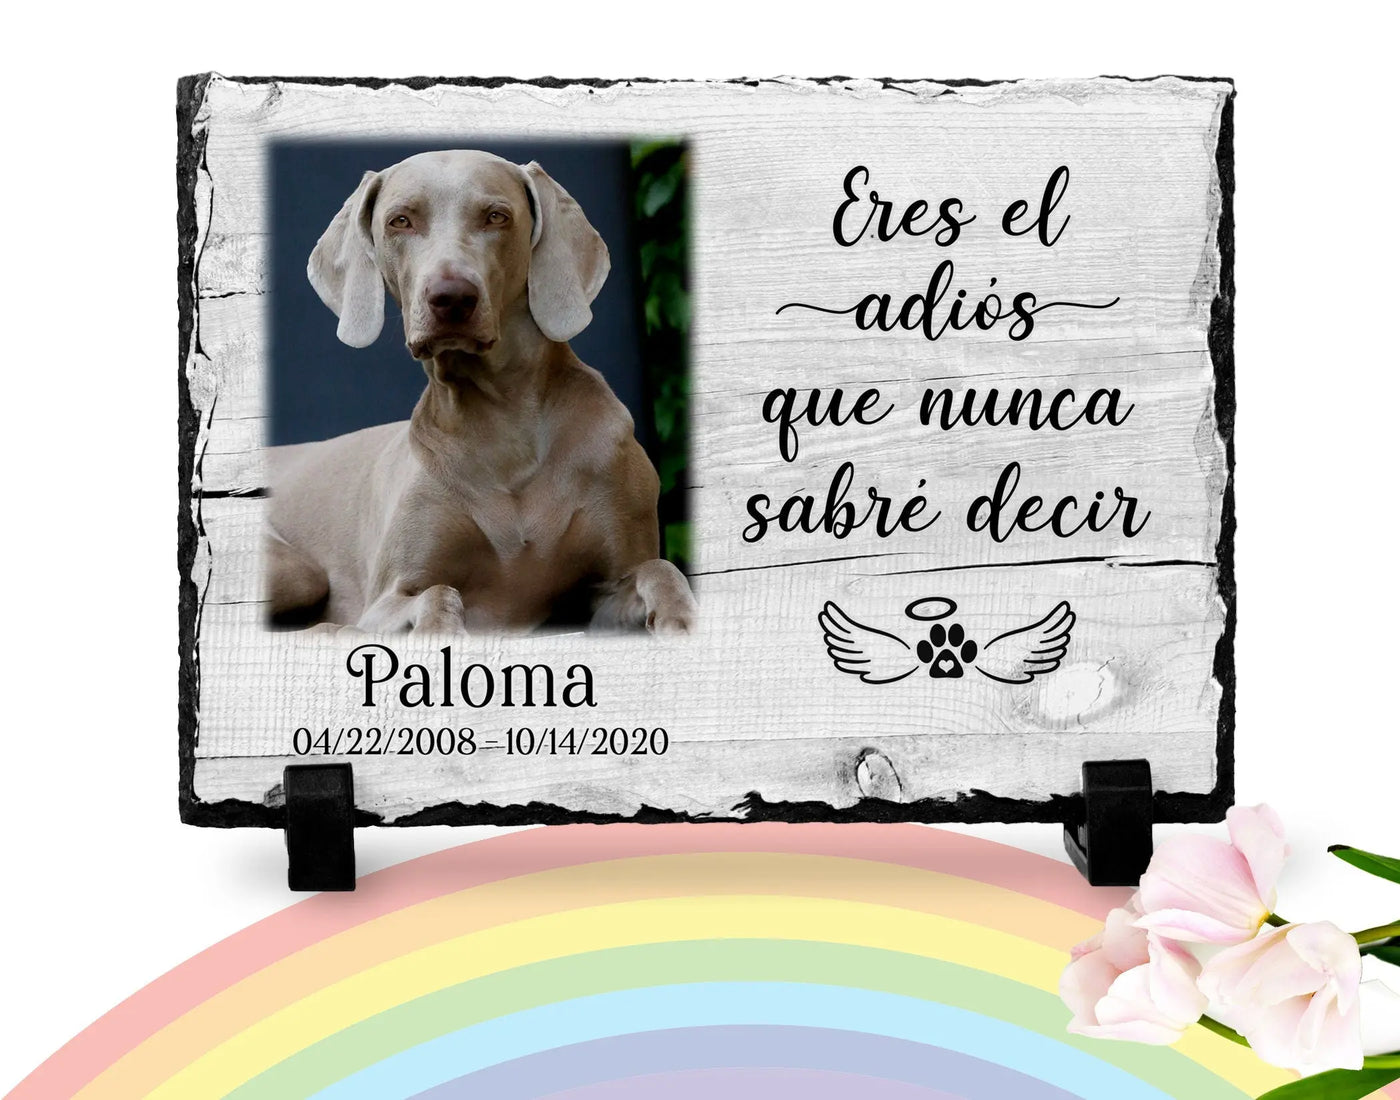 Dog Memorial Plaque Spanish | Eres el adios | Rainbow Bridge | Pet memorial plaque | Pet loss Gift | Poema para perdida de perro español28 My Furever Memories